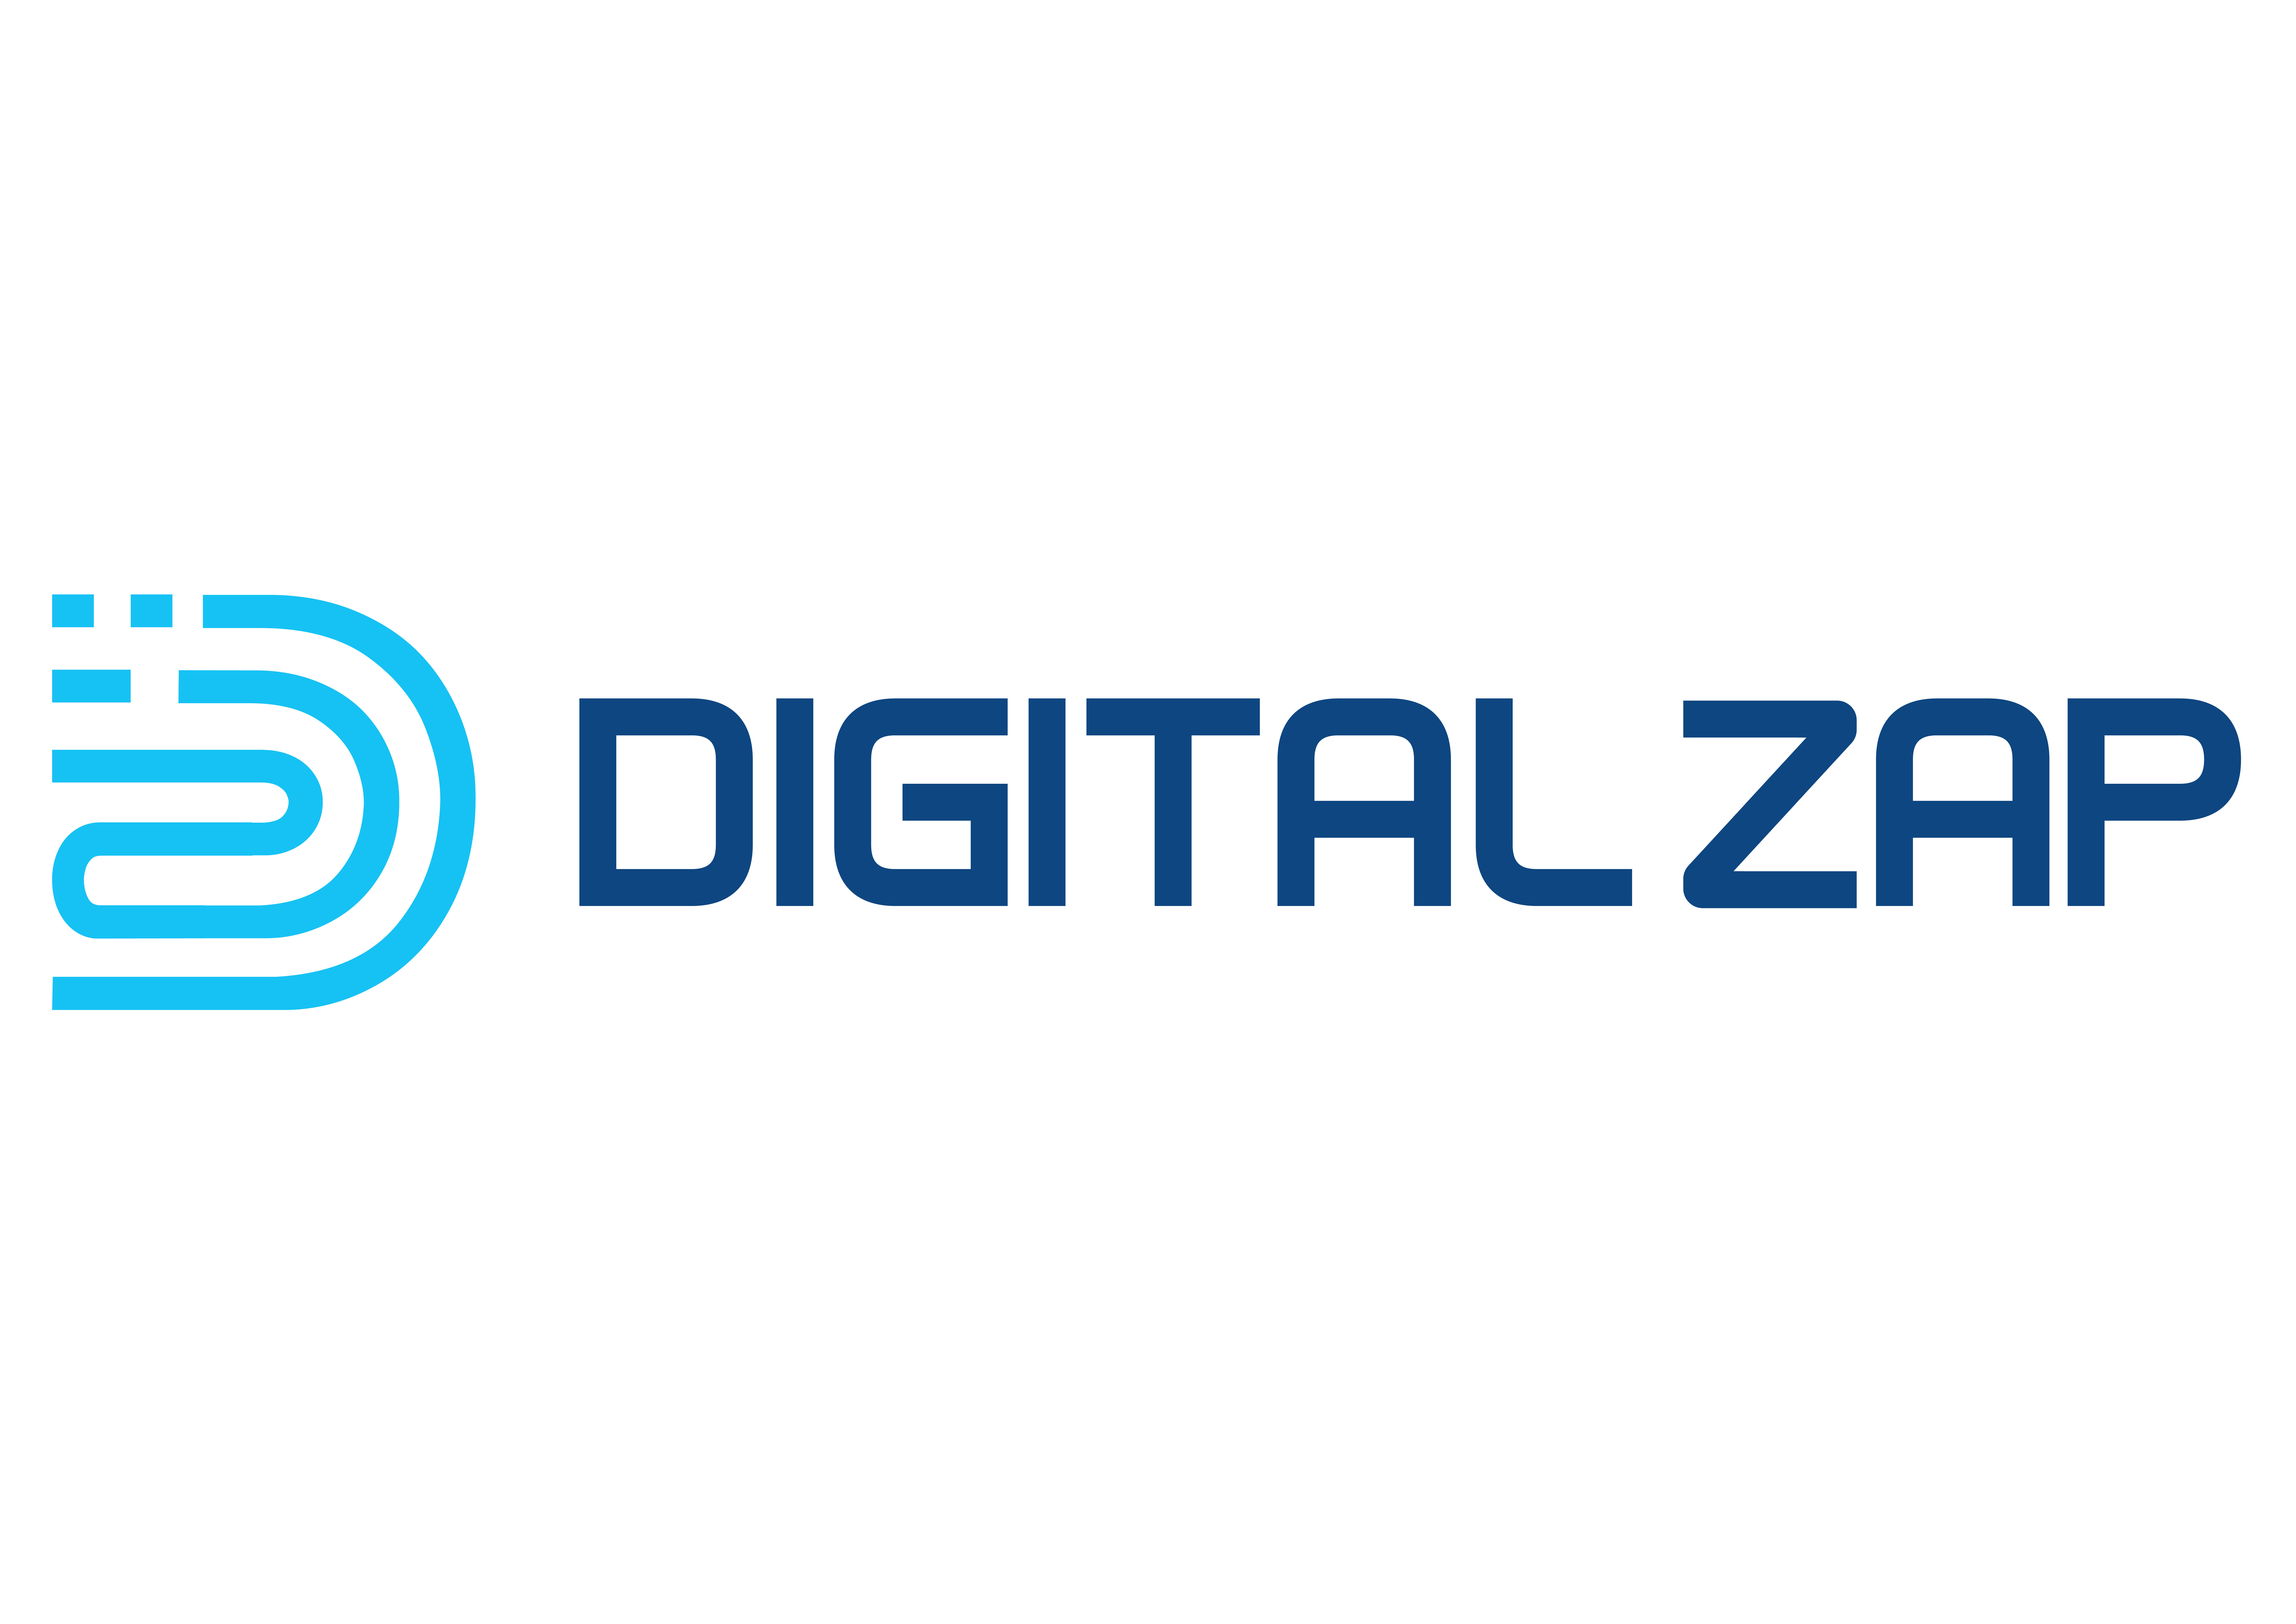 DigitalZap logo